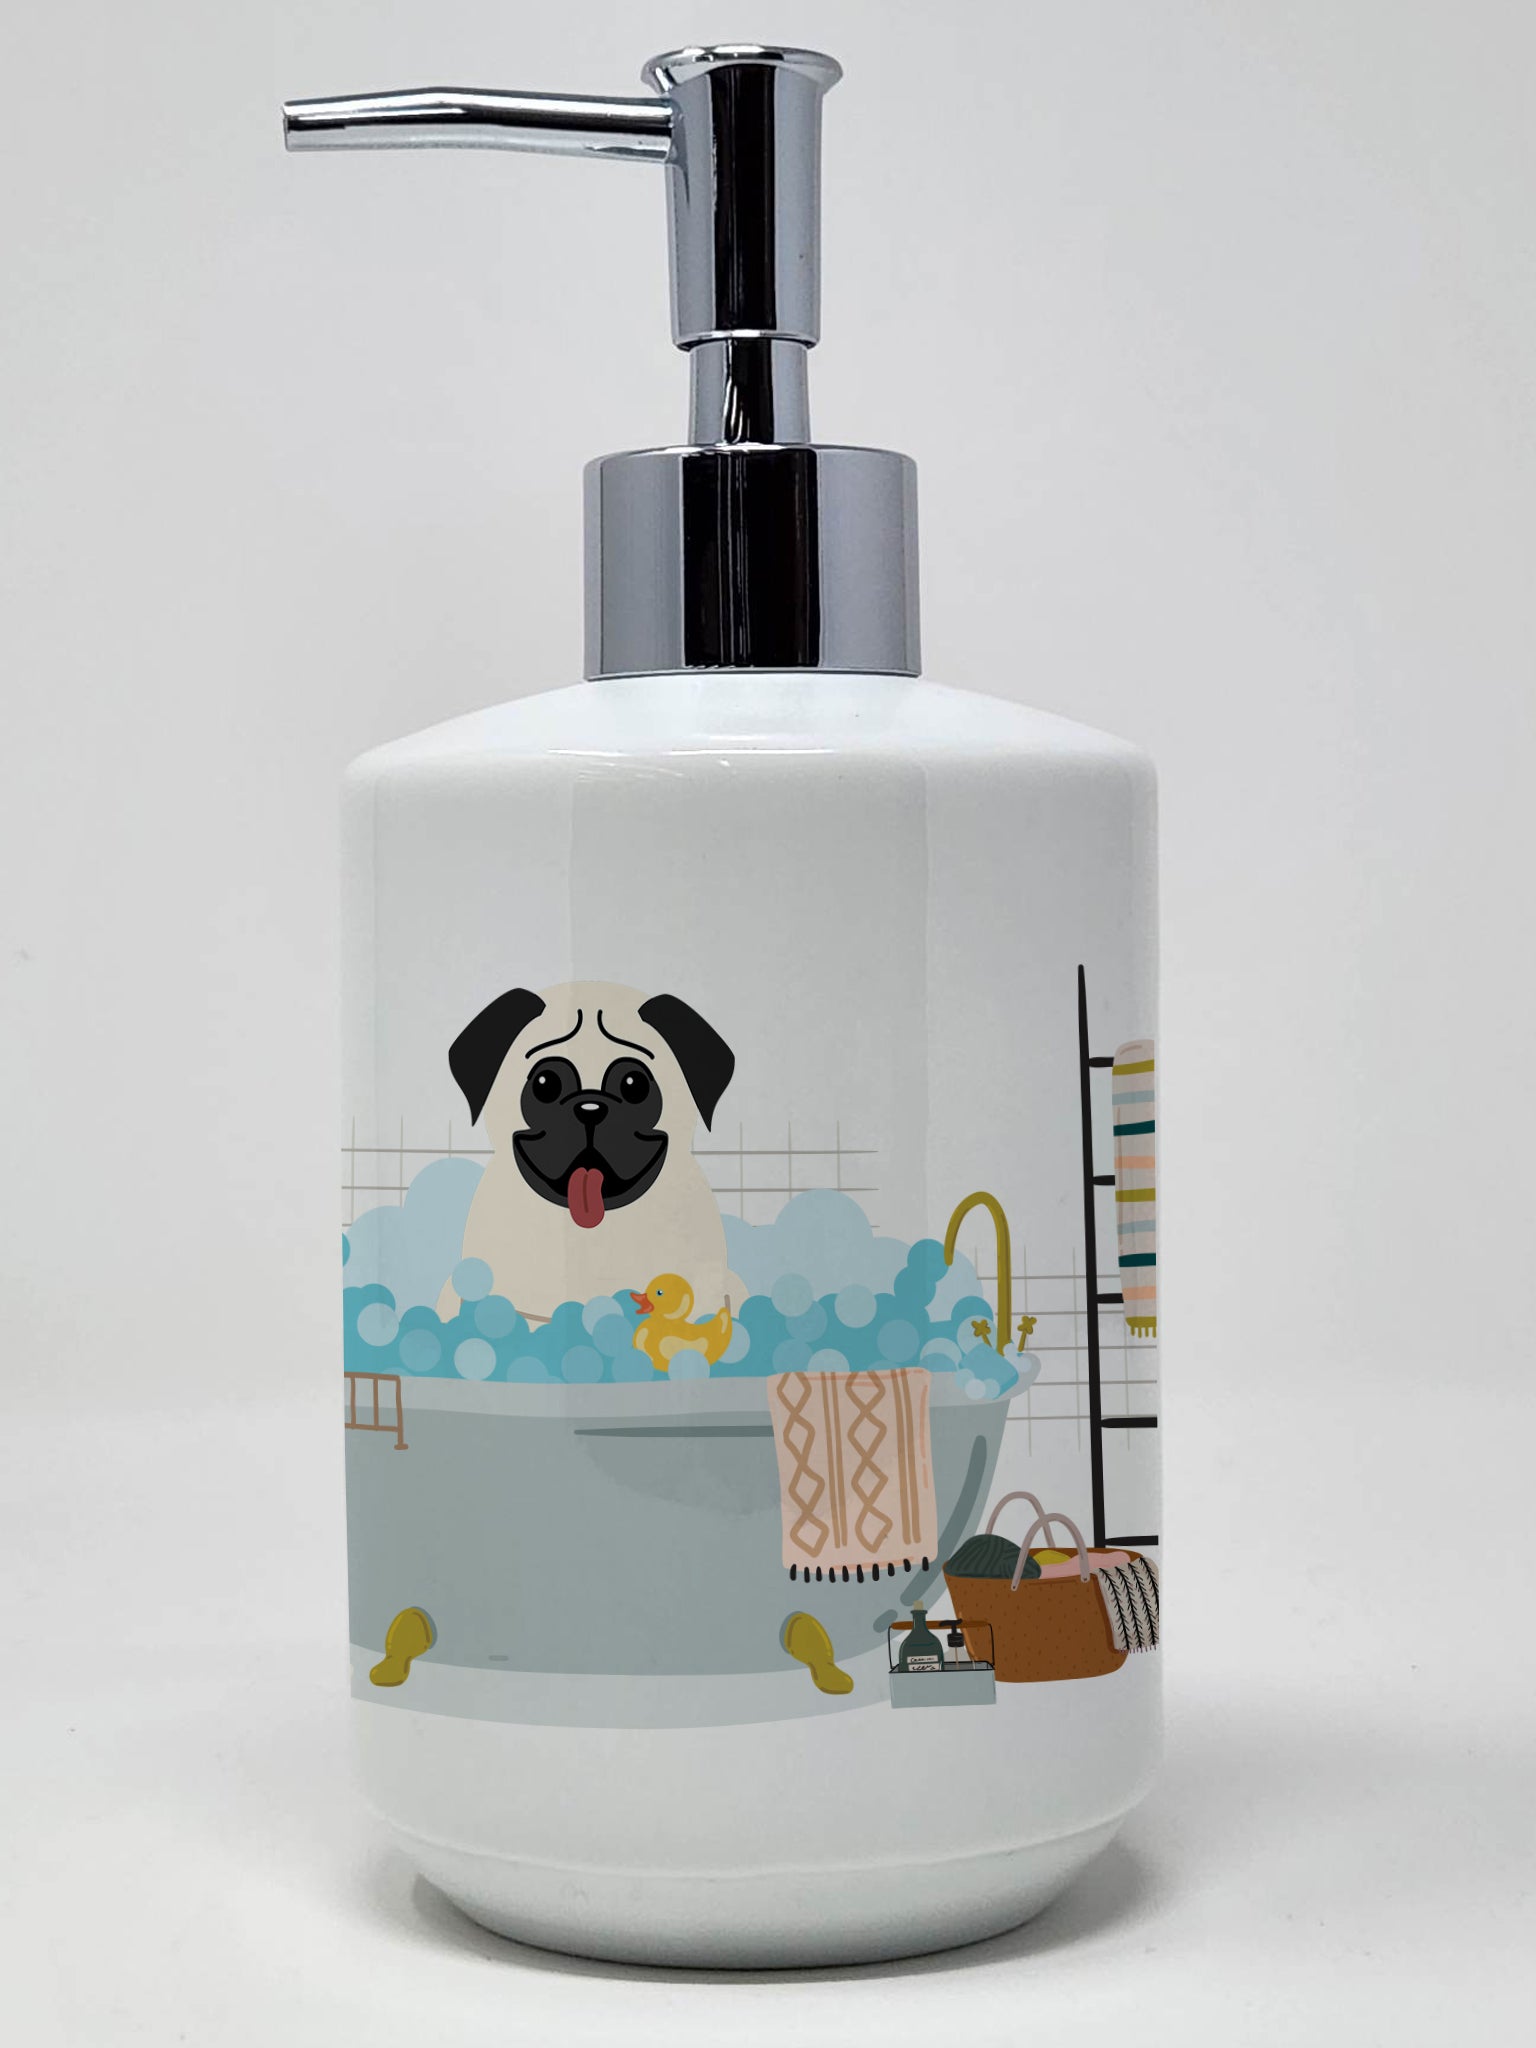 Buy this Cream Pug in Bathtub Ceramic Soap Dispenser